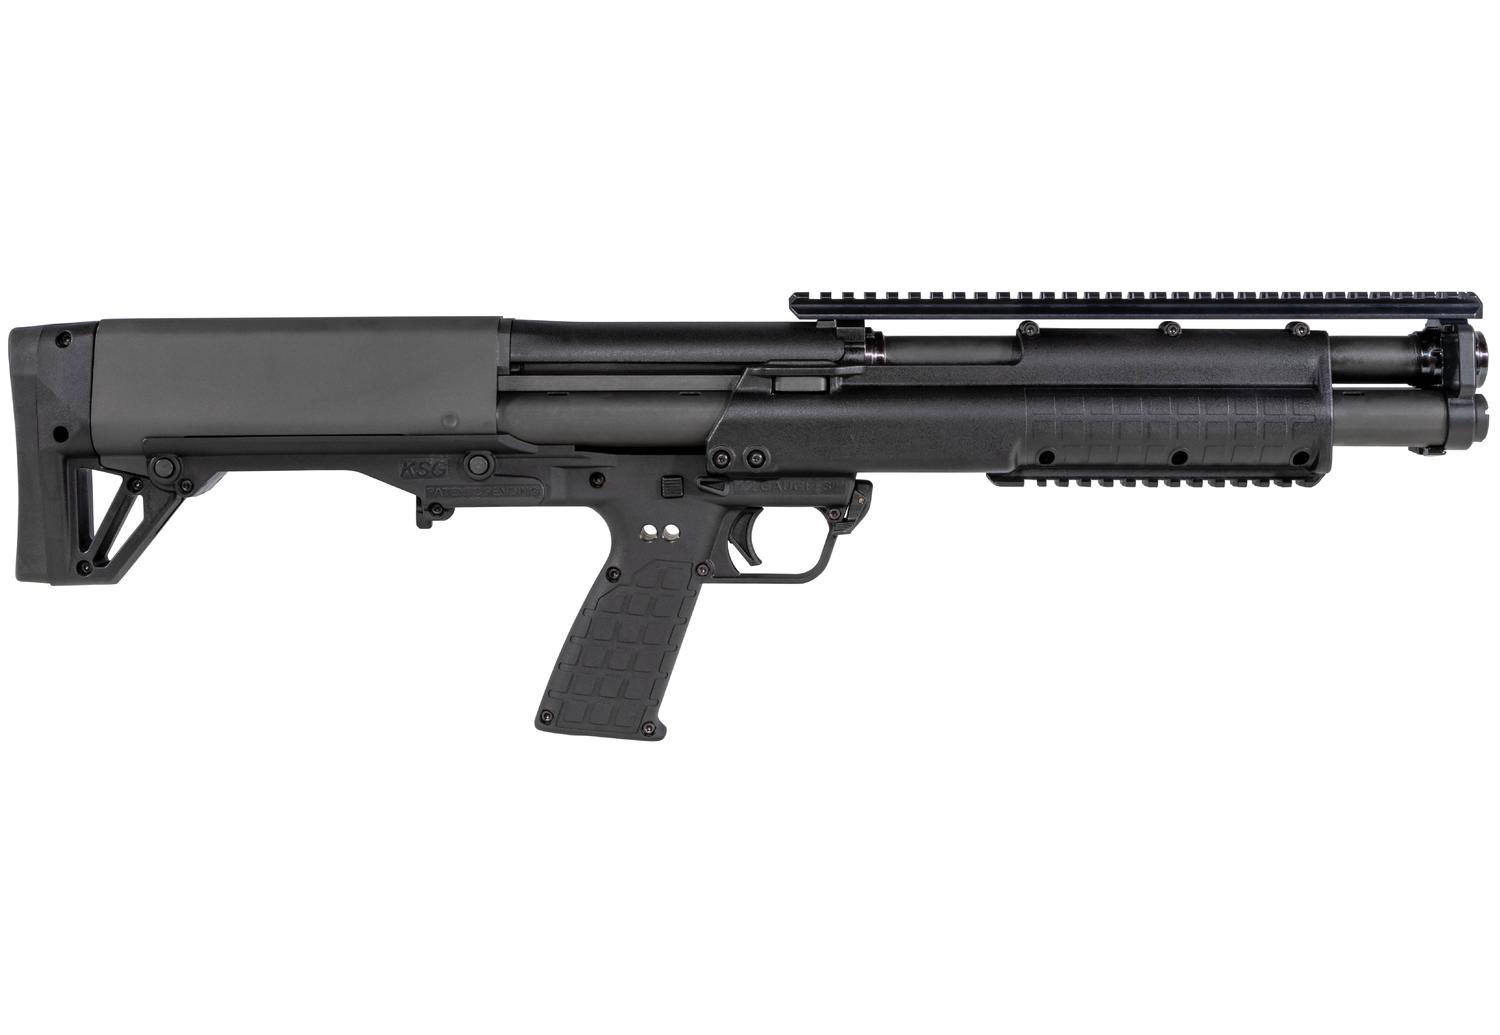  Ksg 12ga Shotgun - Black